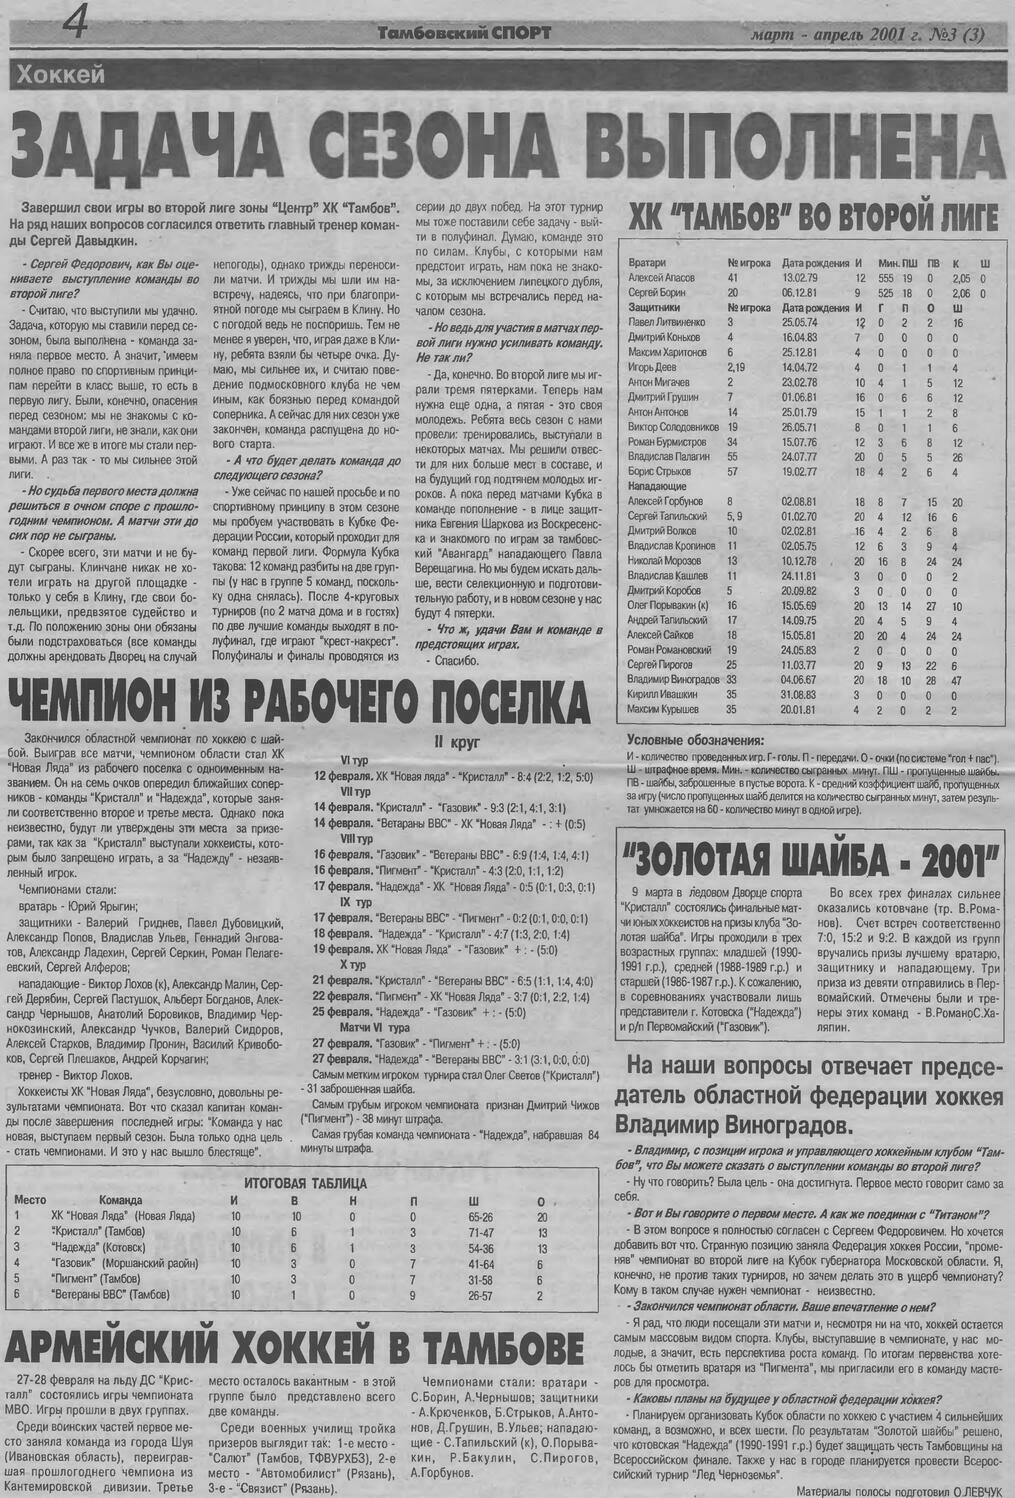 Газета "Тамбовский спорт" №3 от 03-04.2001г. Ст.4